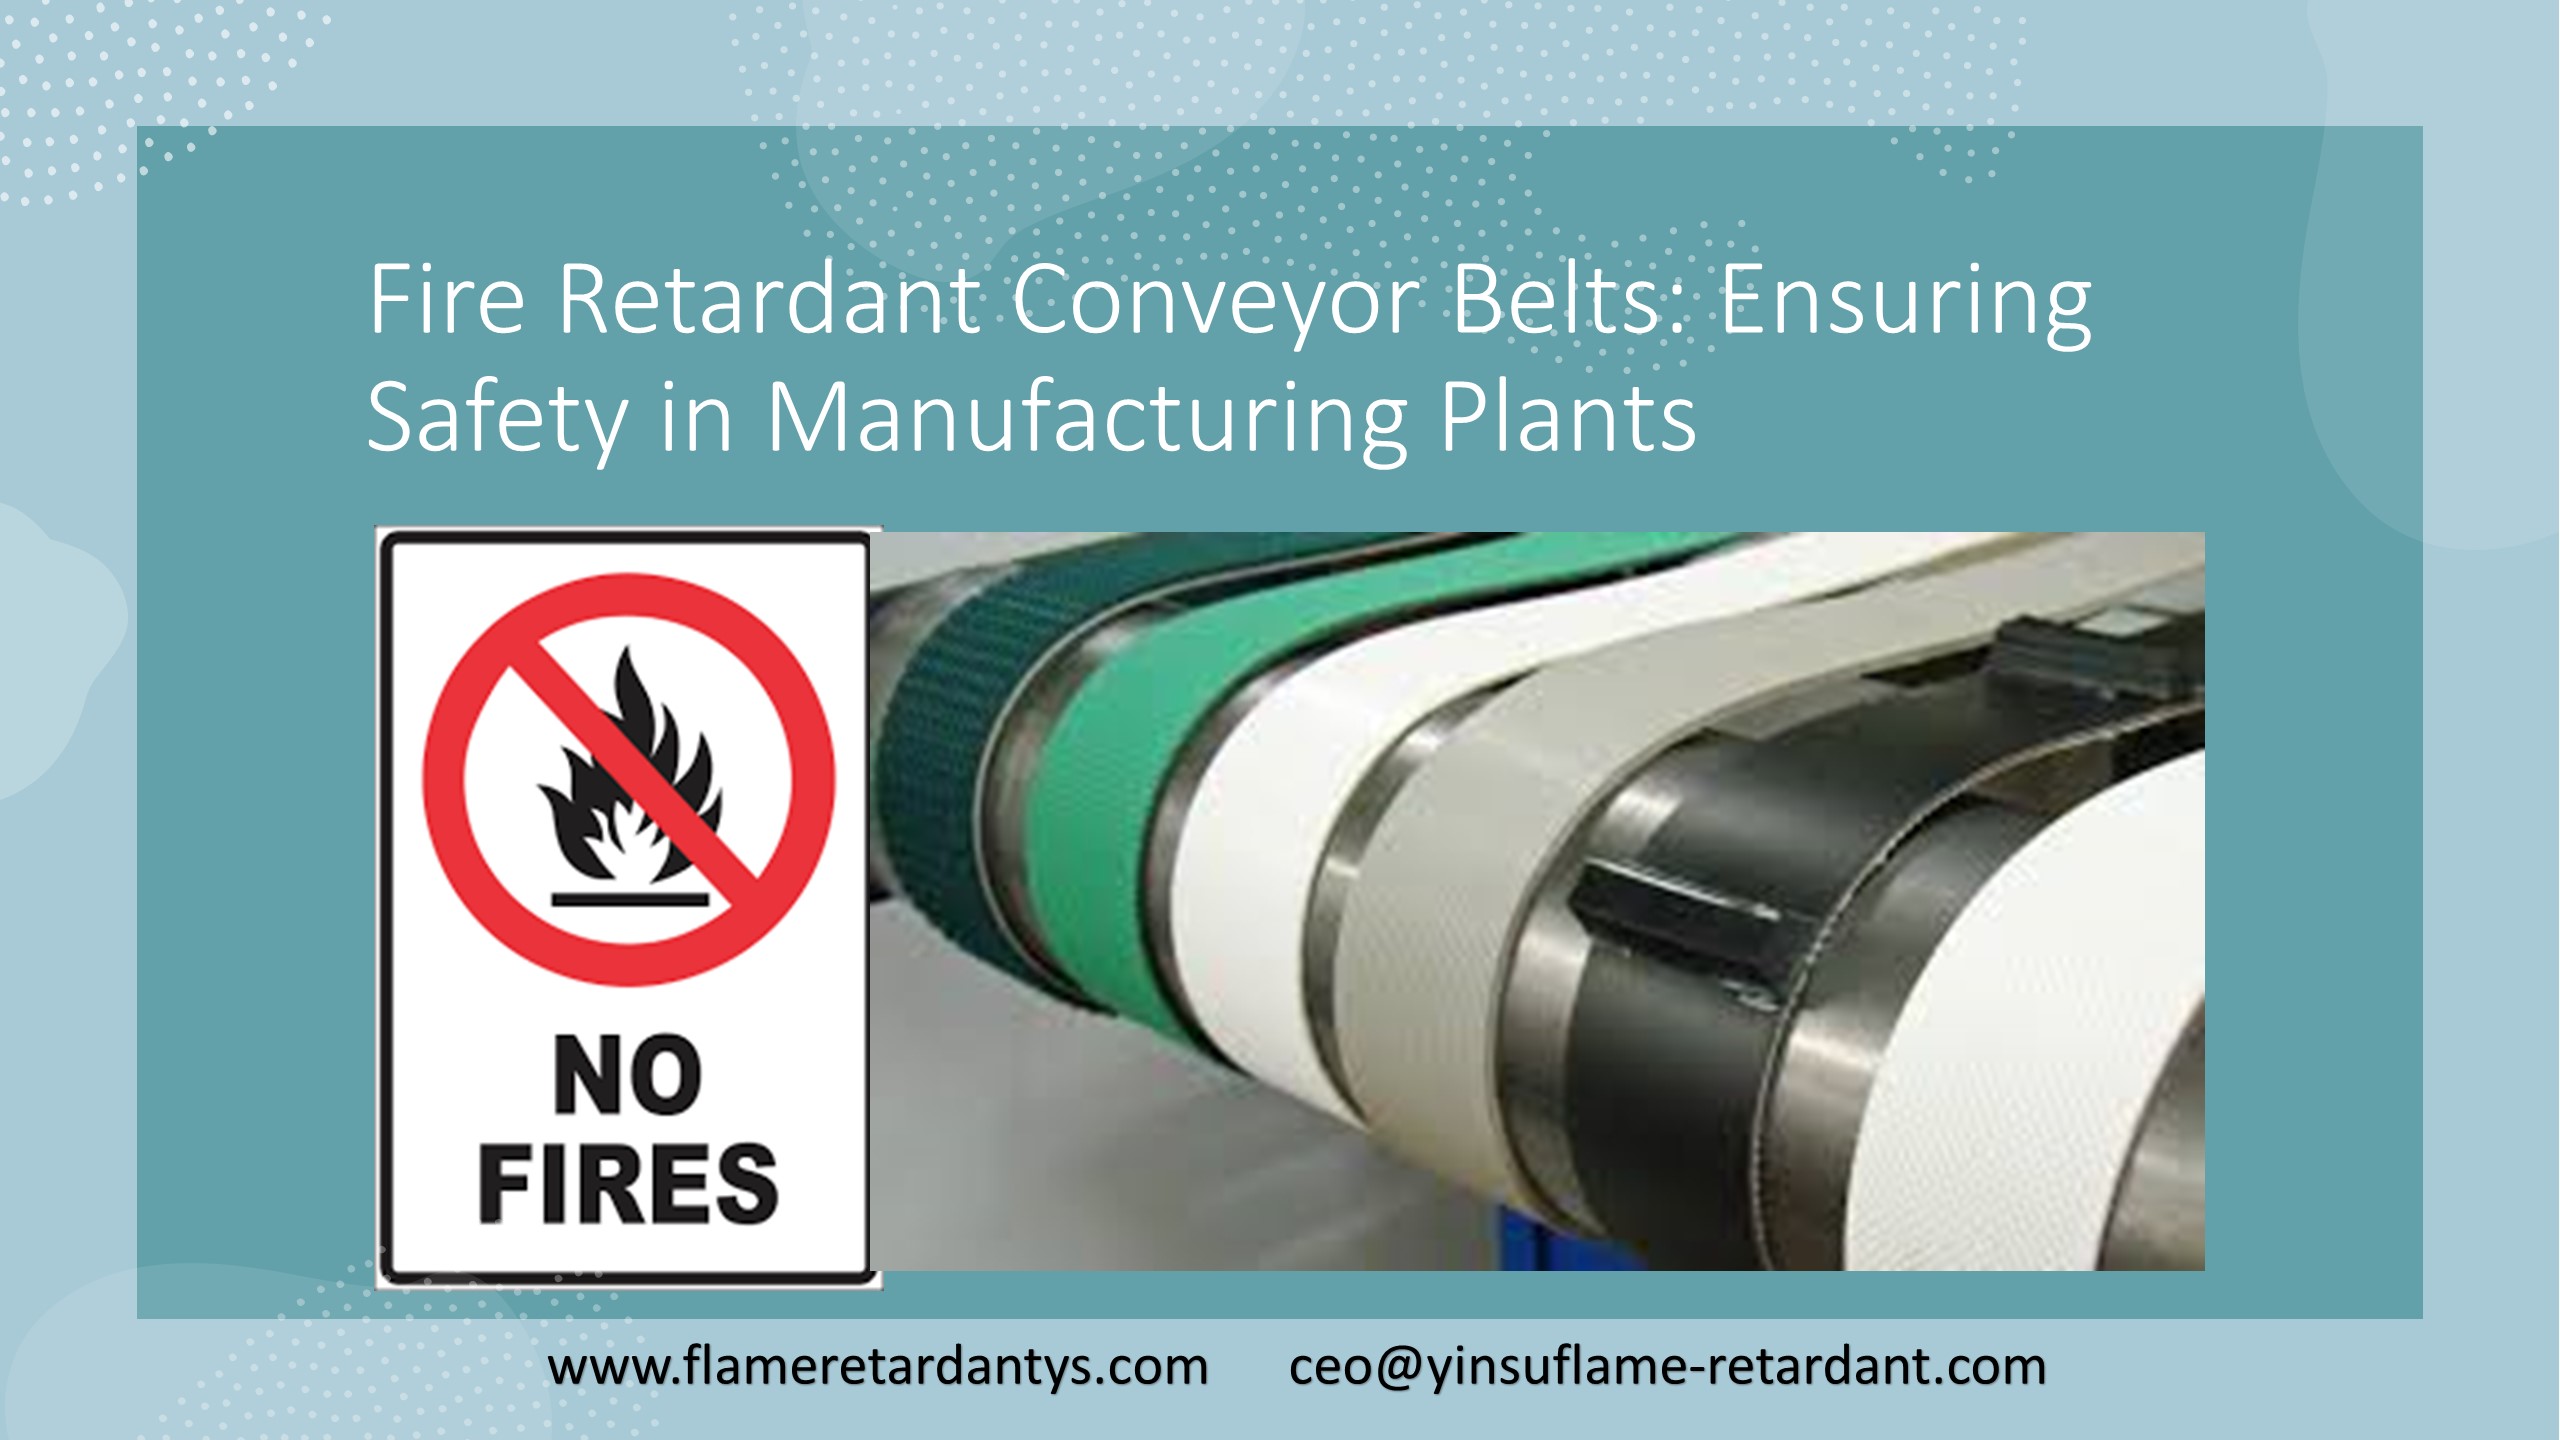 Fire Retardant Conveyor Belts: Ensuring Safety in Manufacturing Plants